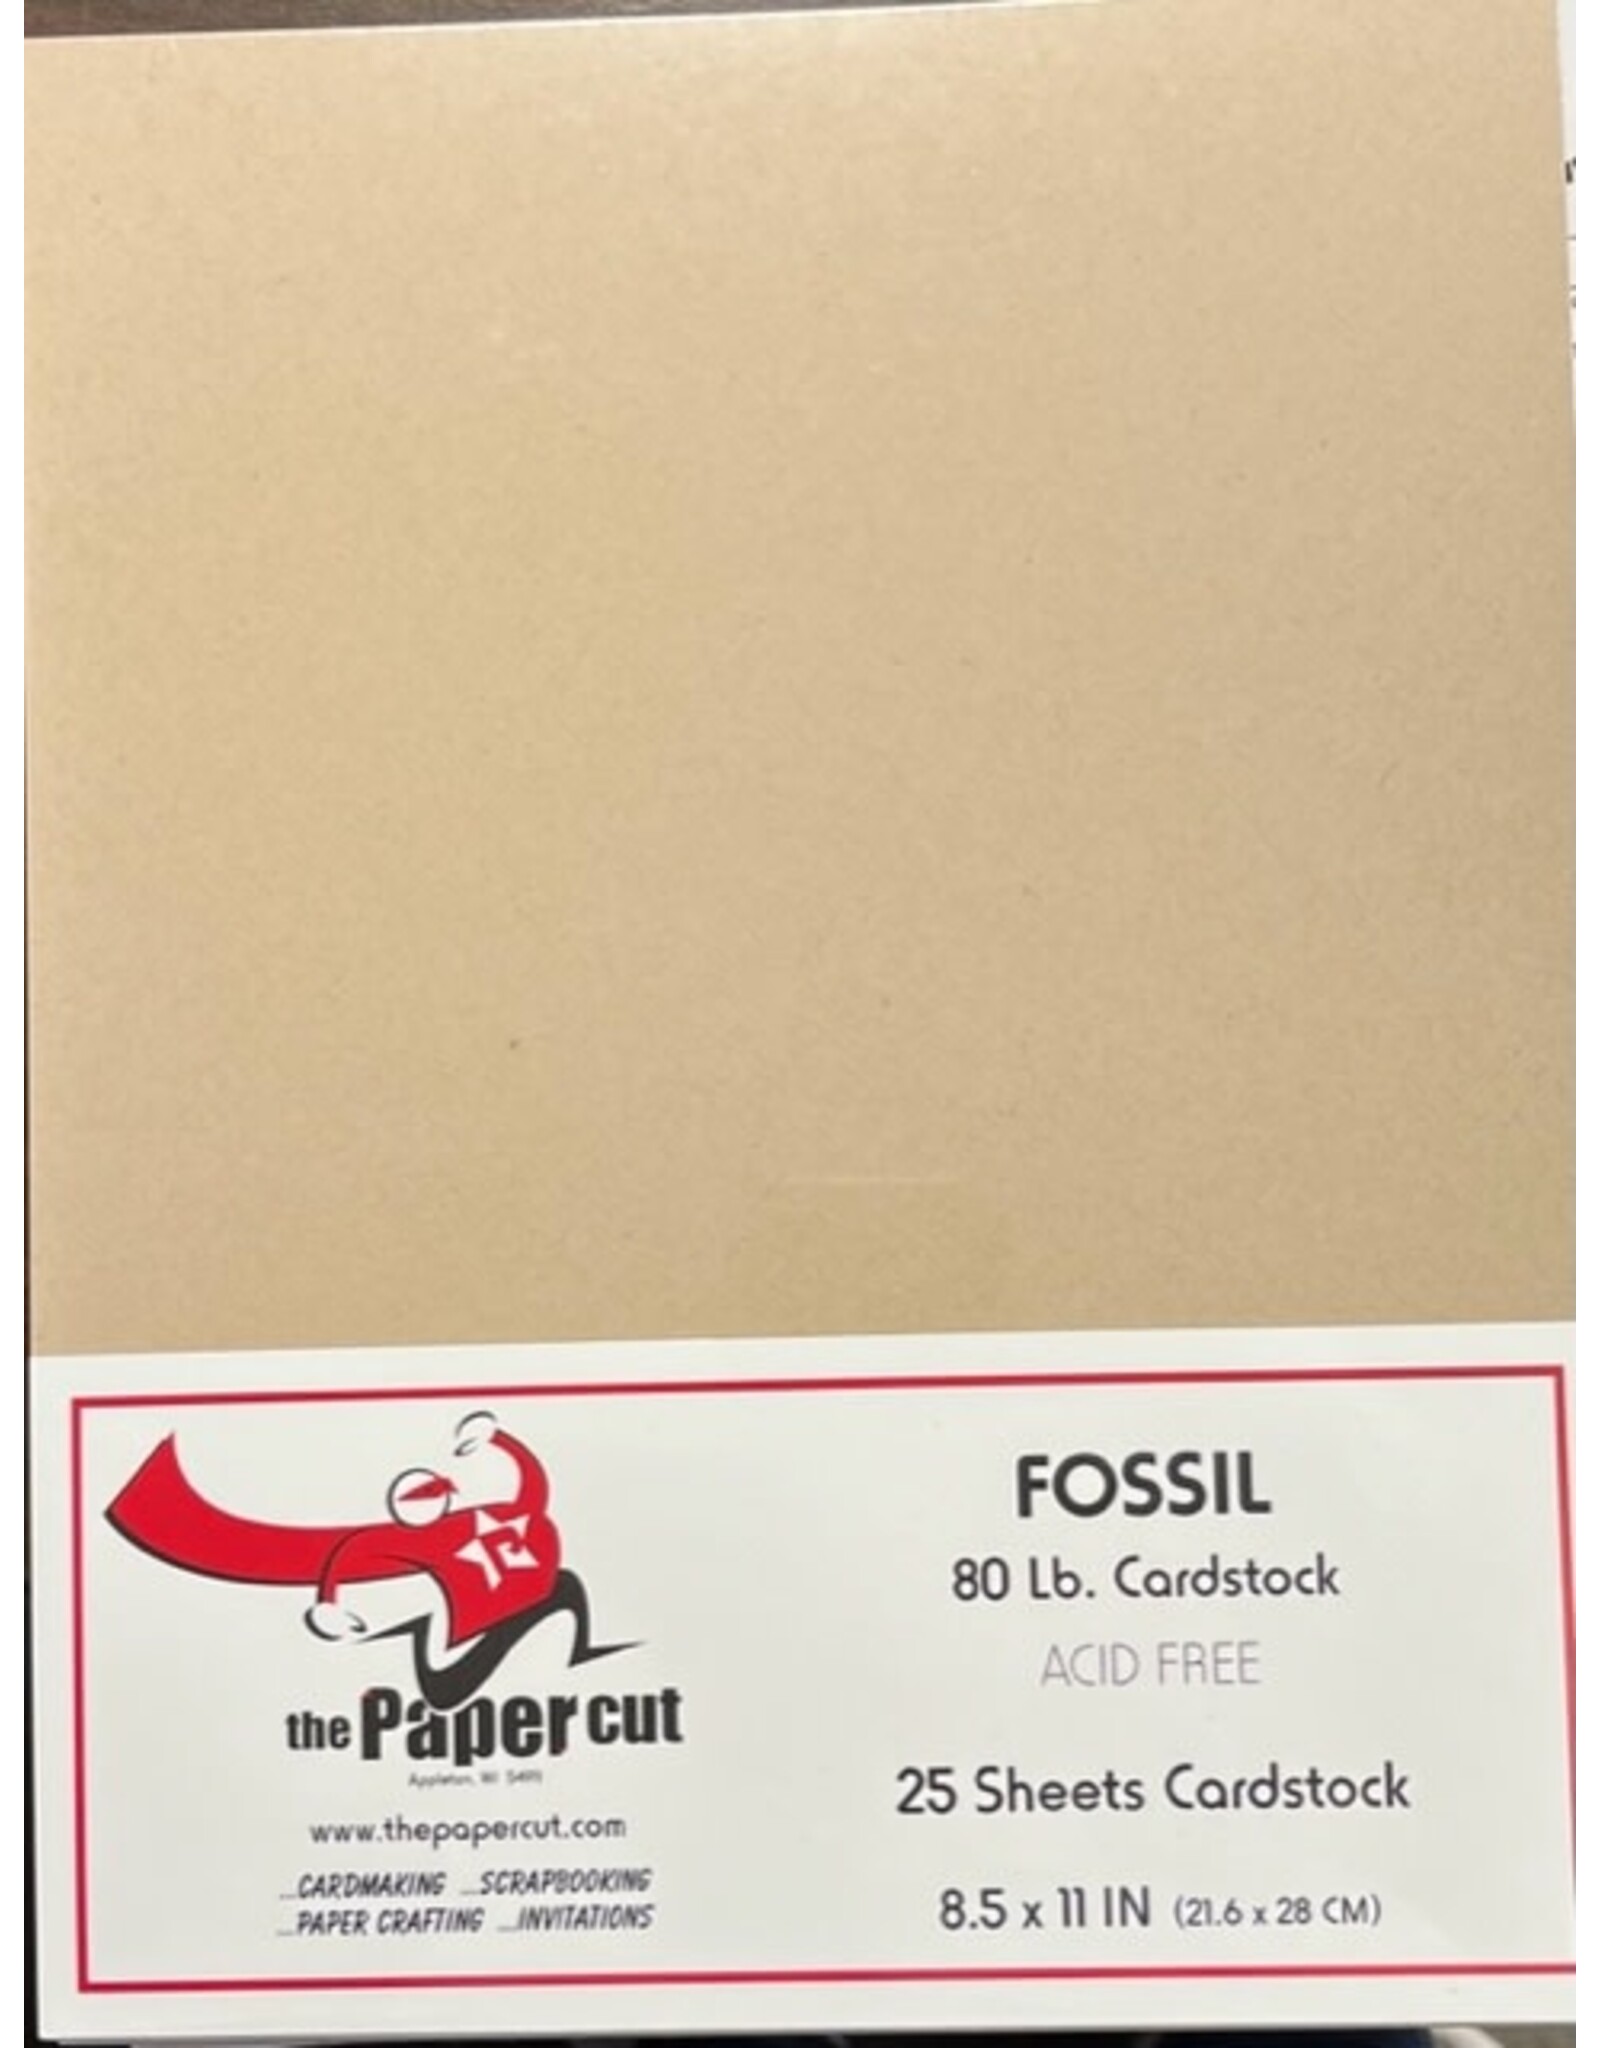 PAPER CUT THE PAPER CUT 80 LB FOSSIL 8.5x11 CARDSTOCK 25 SHEETS